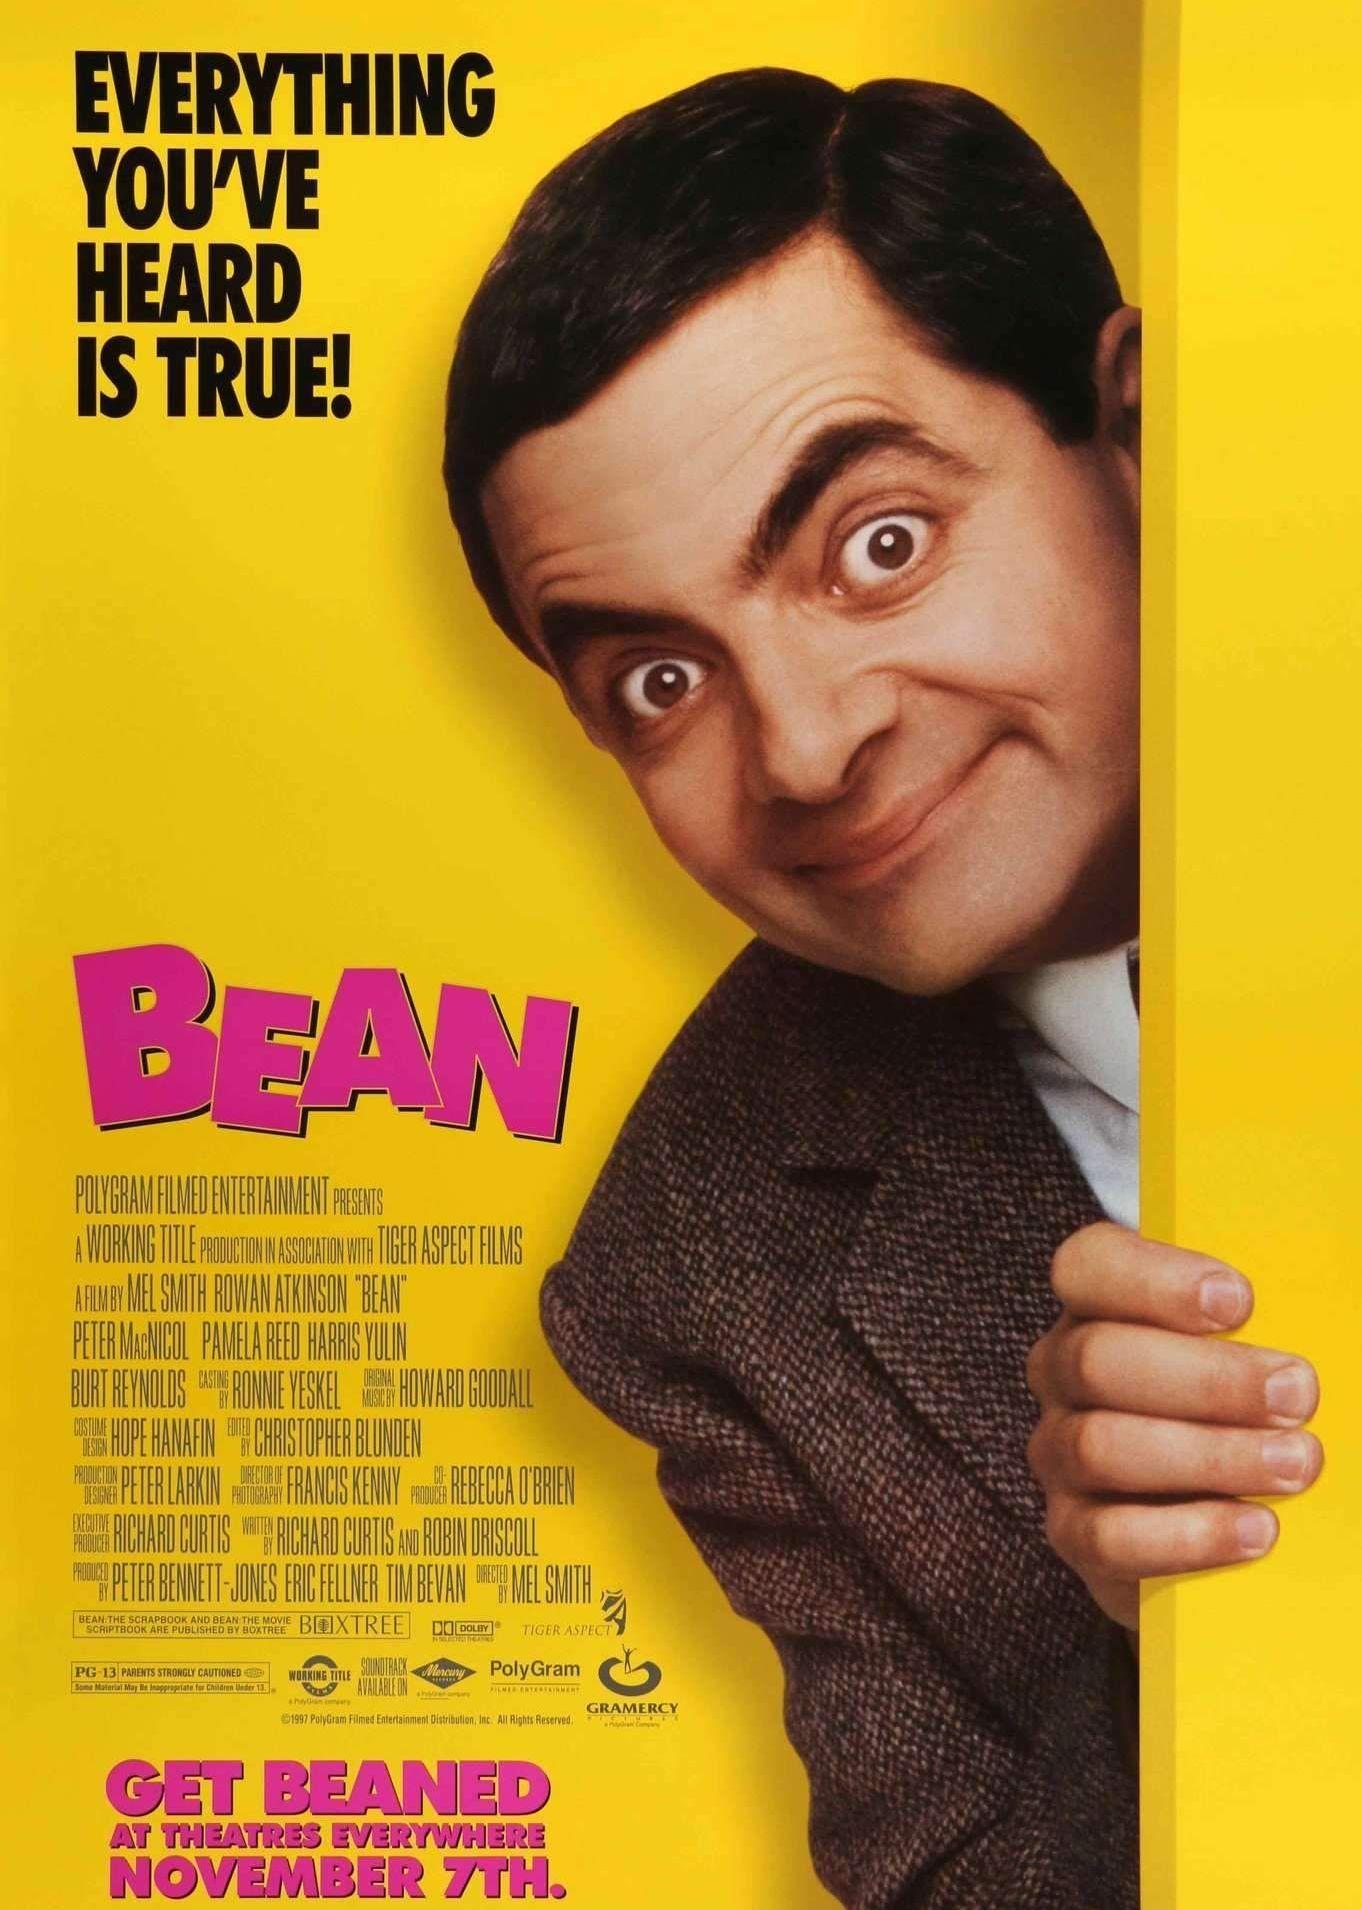 【憨豆先生（Mr. Bean）手绘新iPad壁纸】高清 "憨豆先生（Mr. Bean）手绘新iPad壁纸"第7张_太平洋电脑网壁纸库